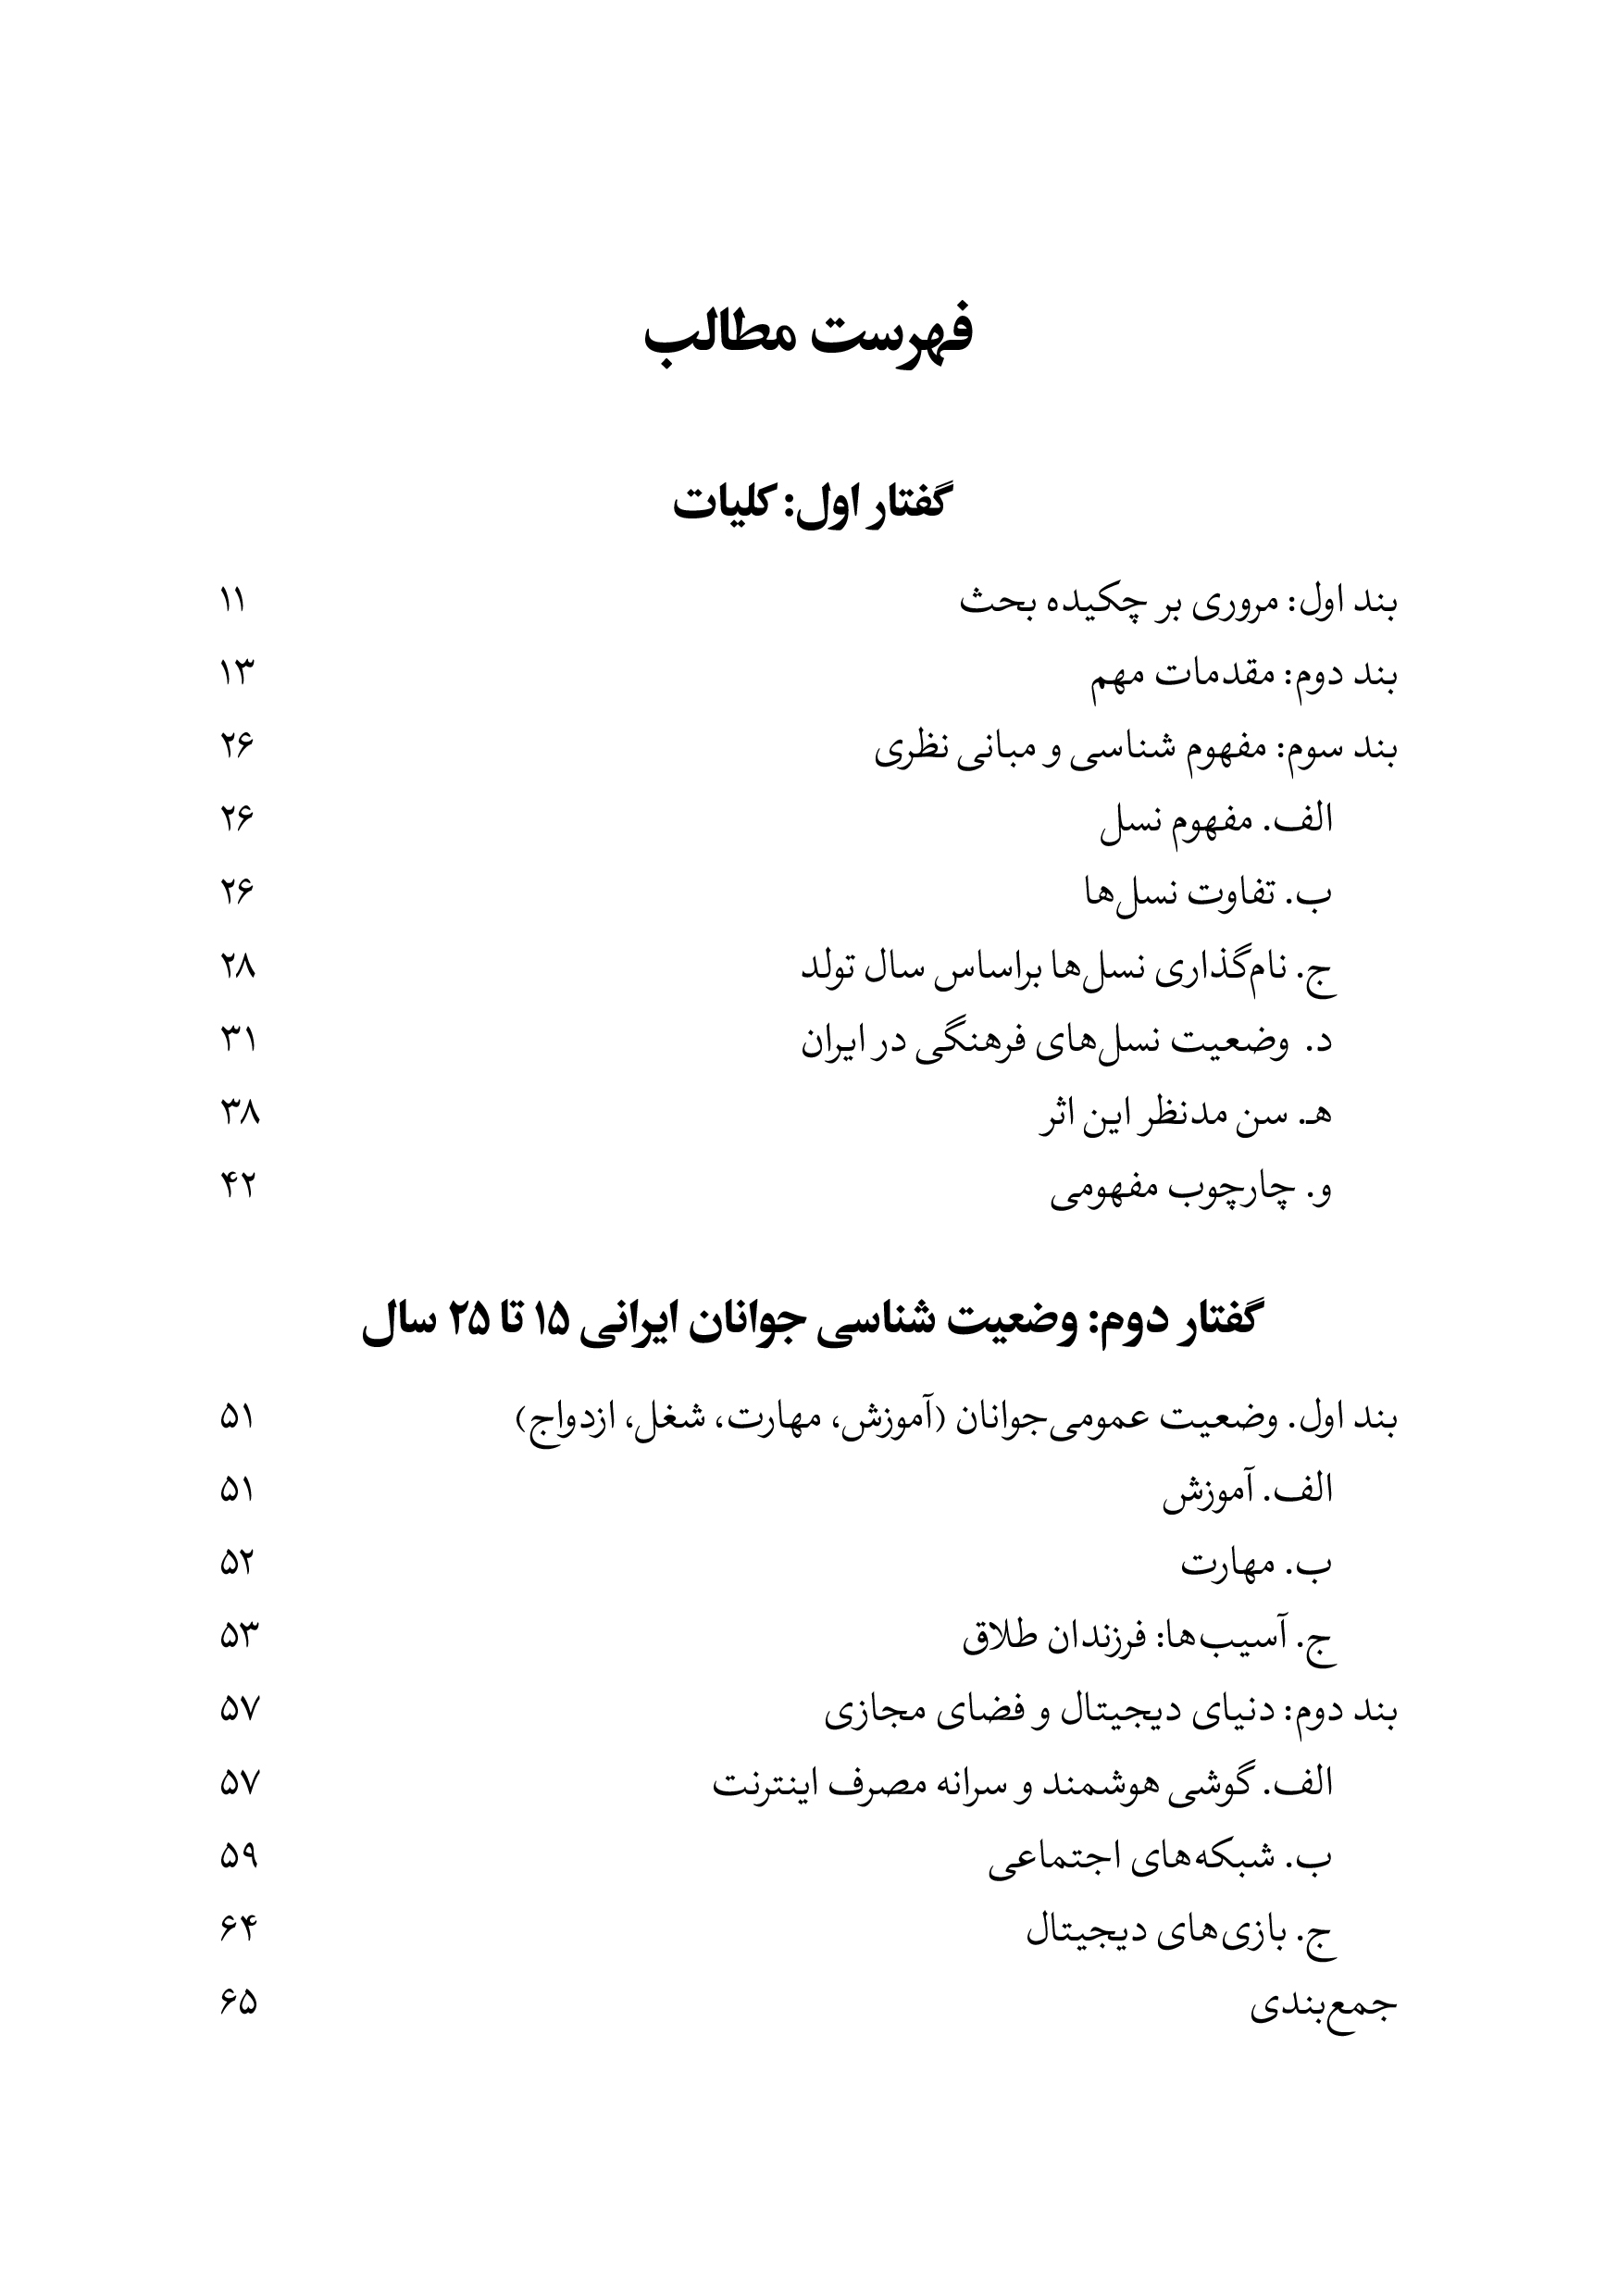 شناخت و بازپروش نسل اسپند (نسلZ) در ایران 